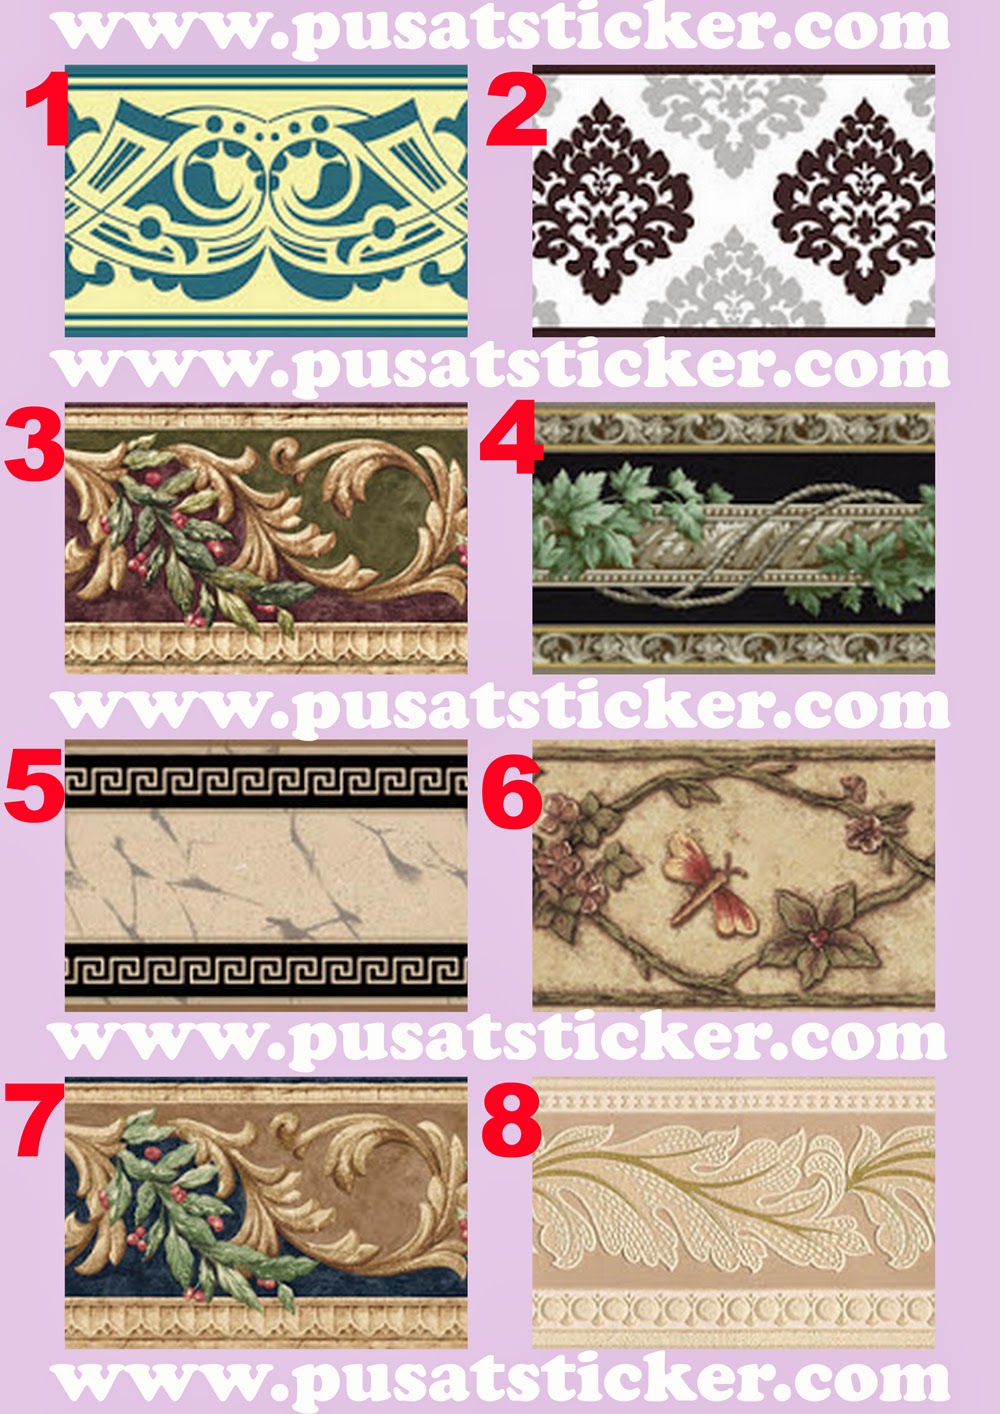 102 Harga Wallpaper Dinding Ruang Tamu Di Bandung Wallpaper Dinding